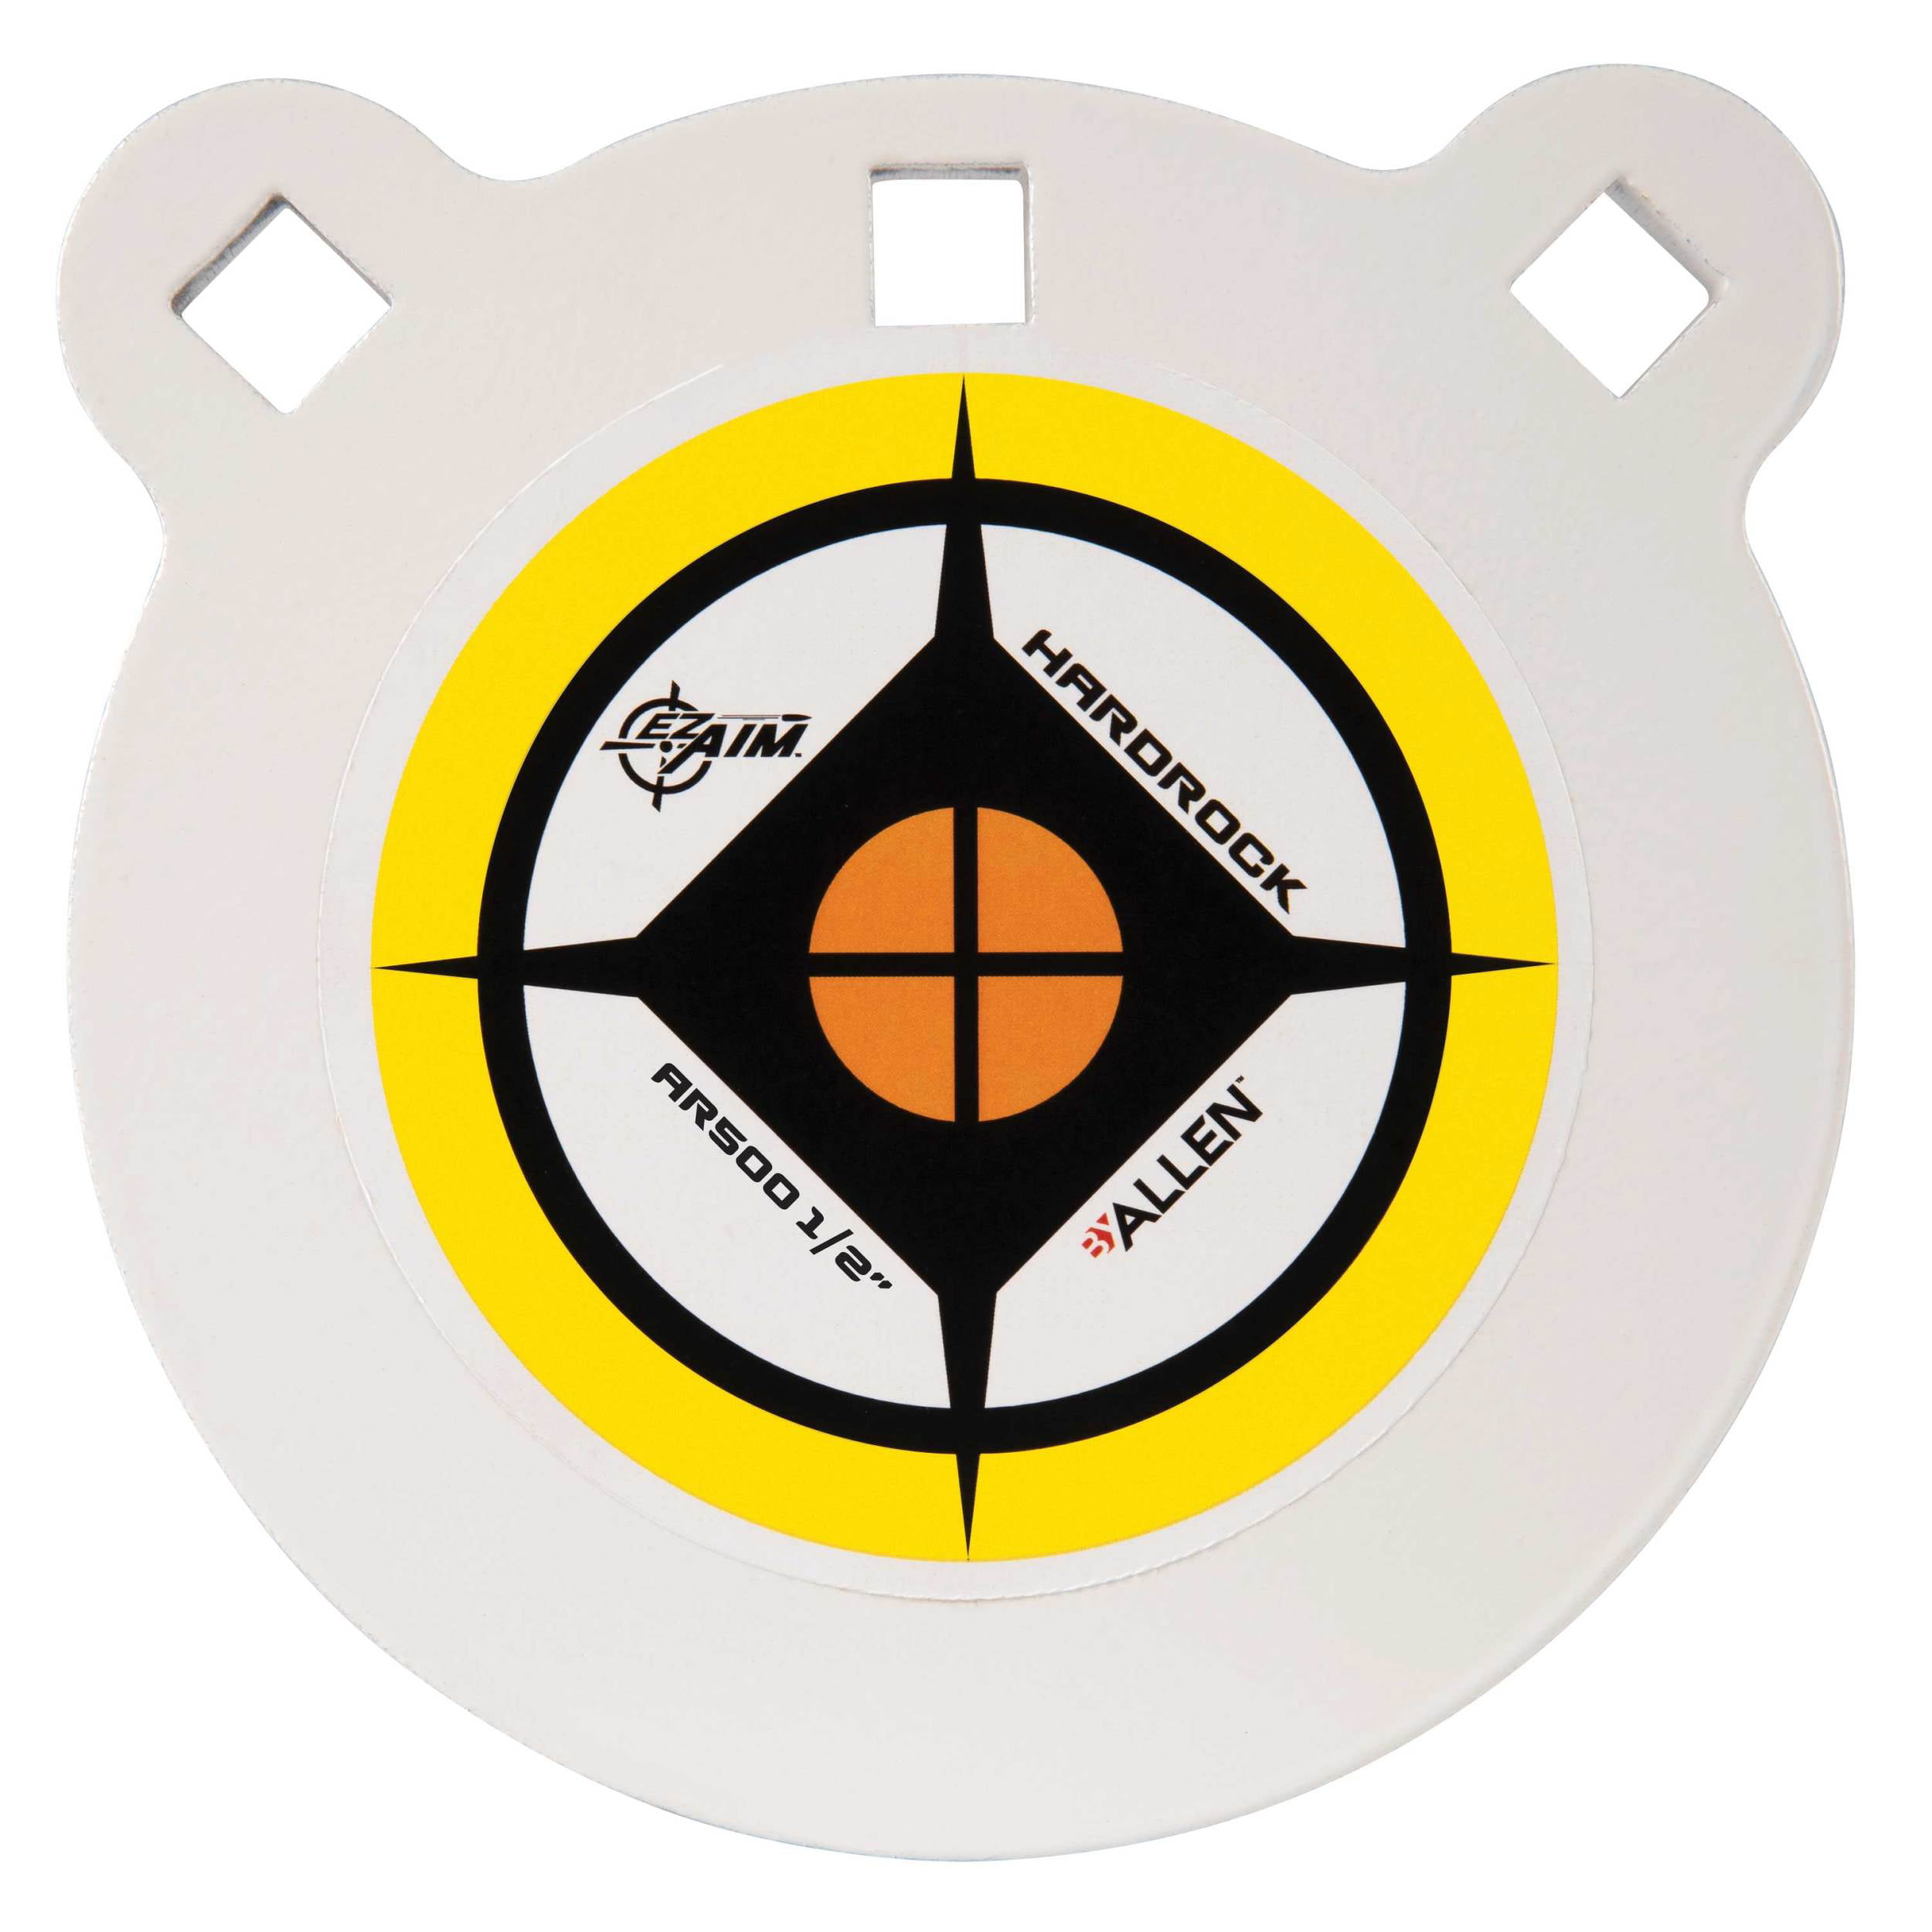 Set of 3 AR500 Steel Target Gong 1/2" x 6" Painted Black Shooting Practice Range 